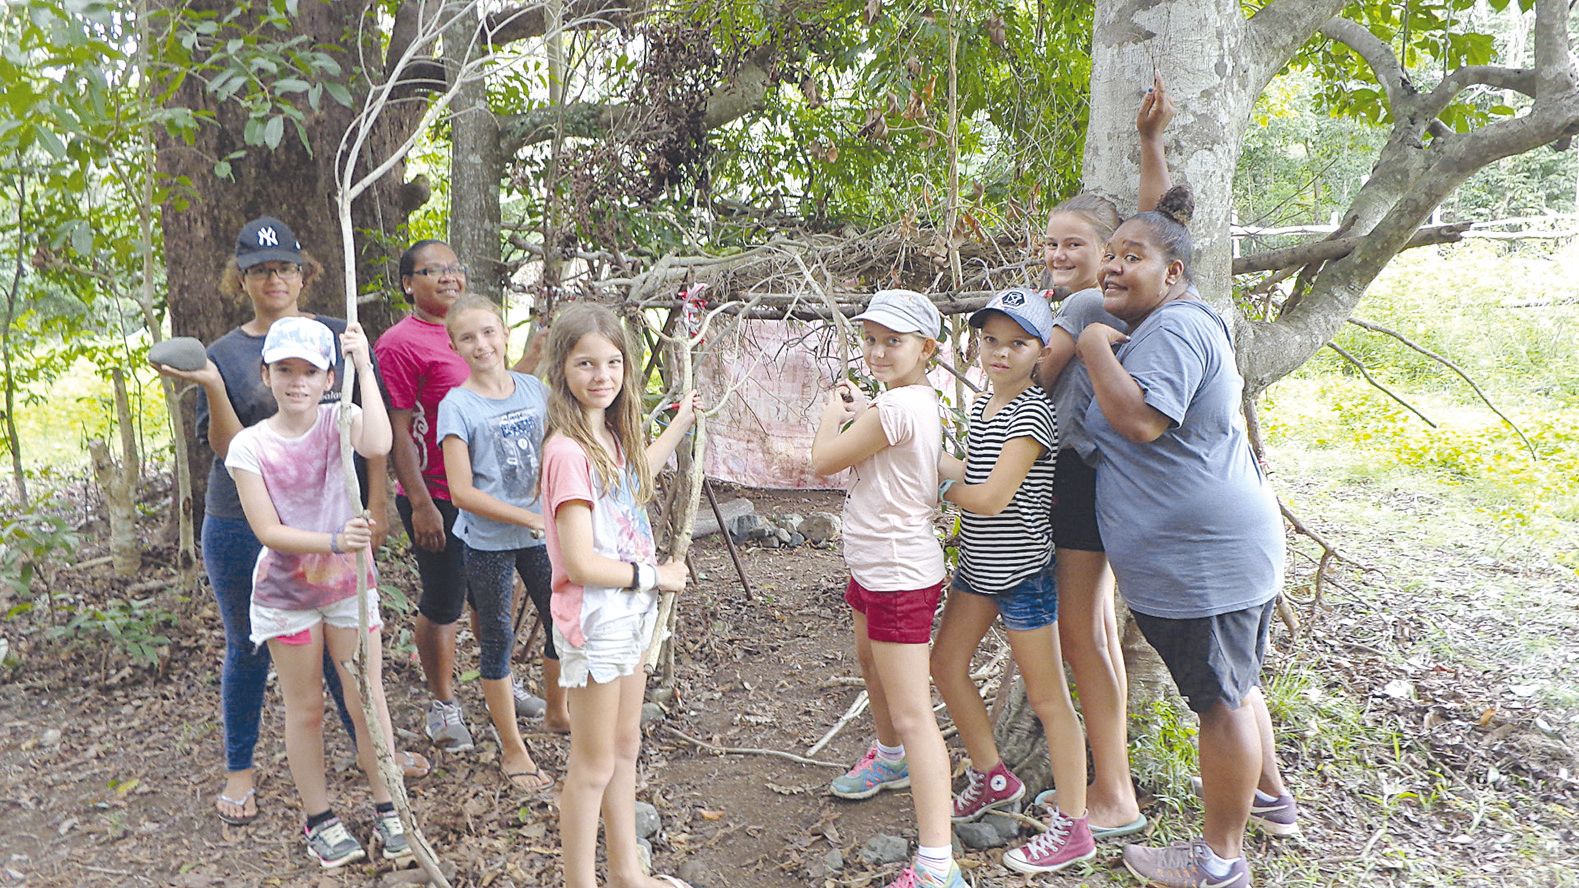 Les longues promenades sur le site ont permis aux jeunes de ramasser des branchages et de construire une cabane façon Koh-Lanta, avec l’aide des animatrices.